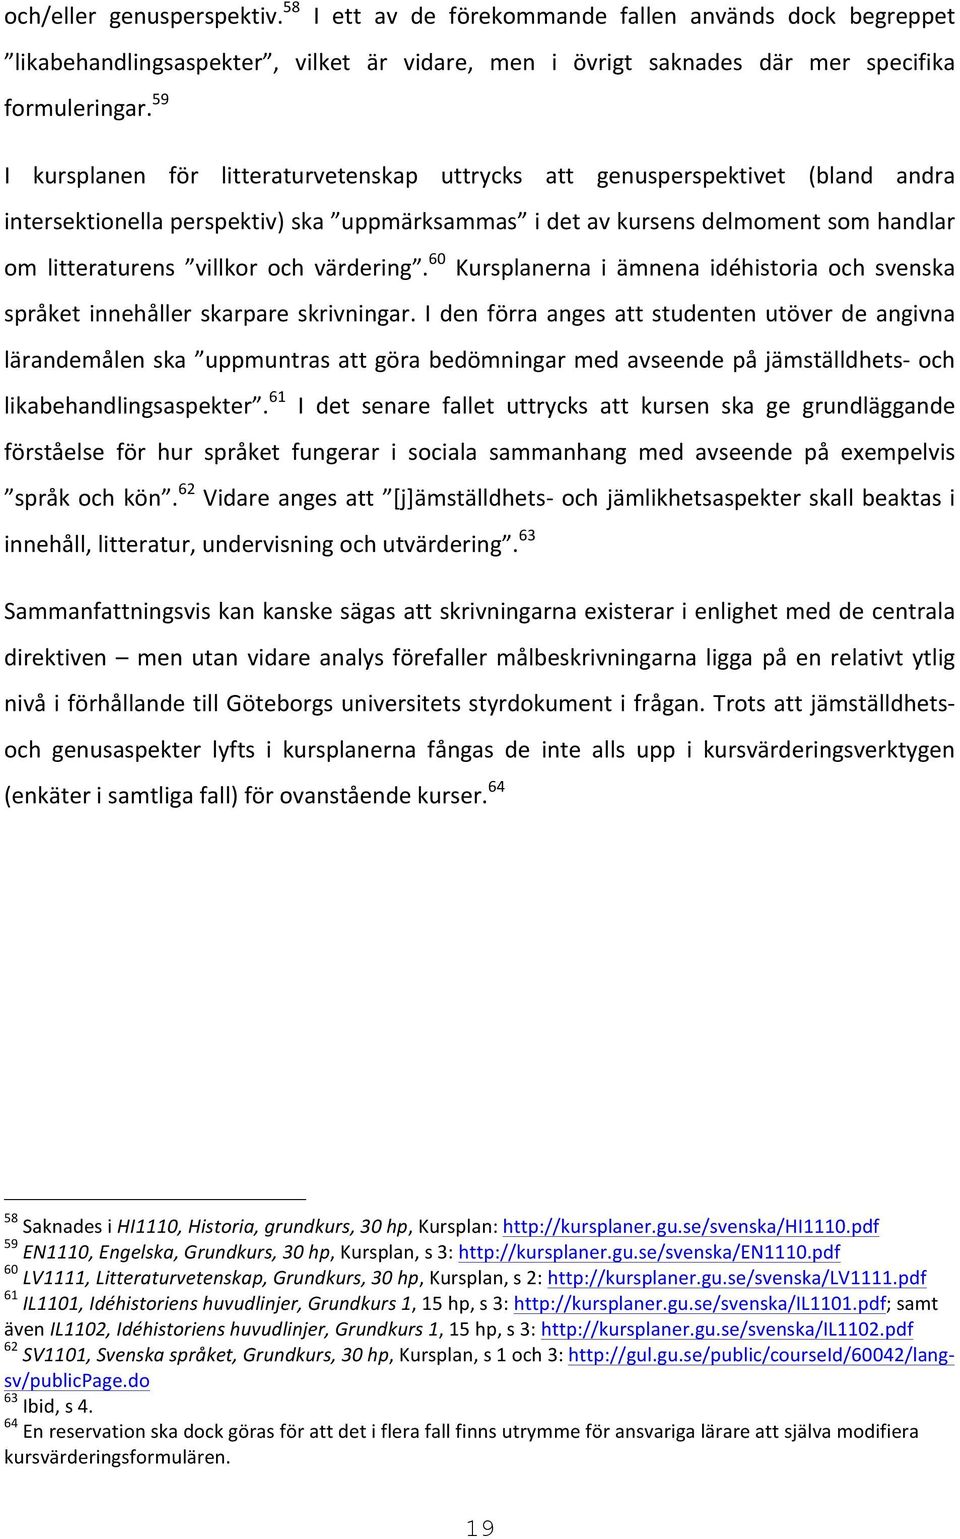 värdering. 60 Kursplanerna i ämnena idéhistoria och svenska språket innehåller skarpare skrivningar.